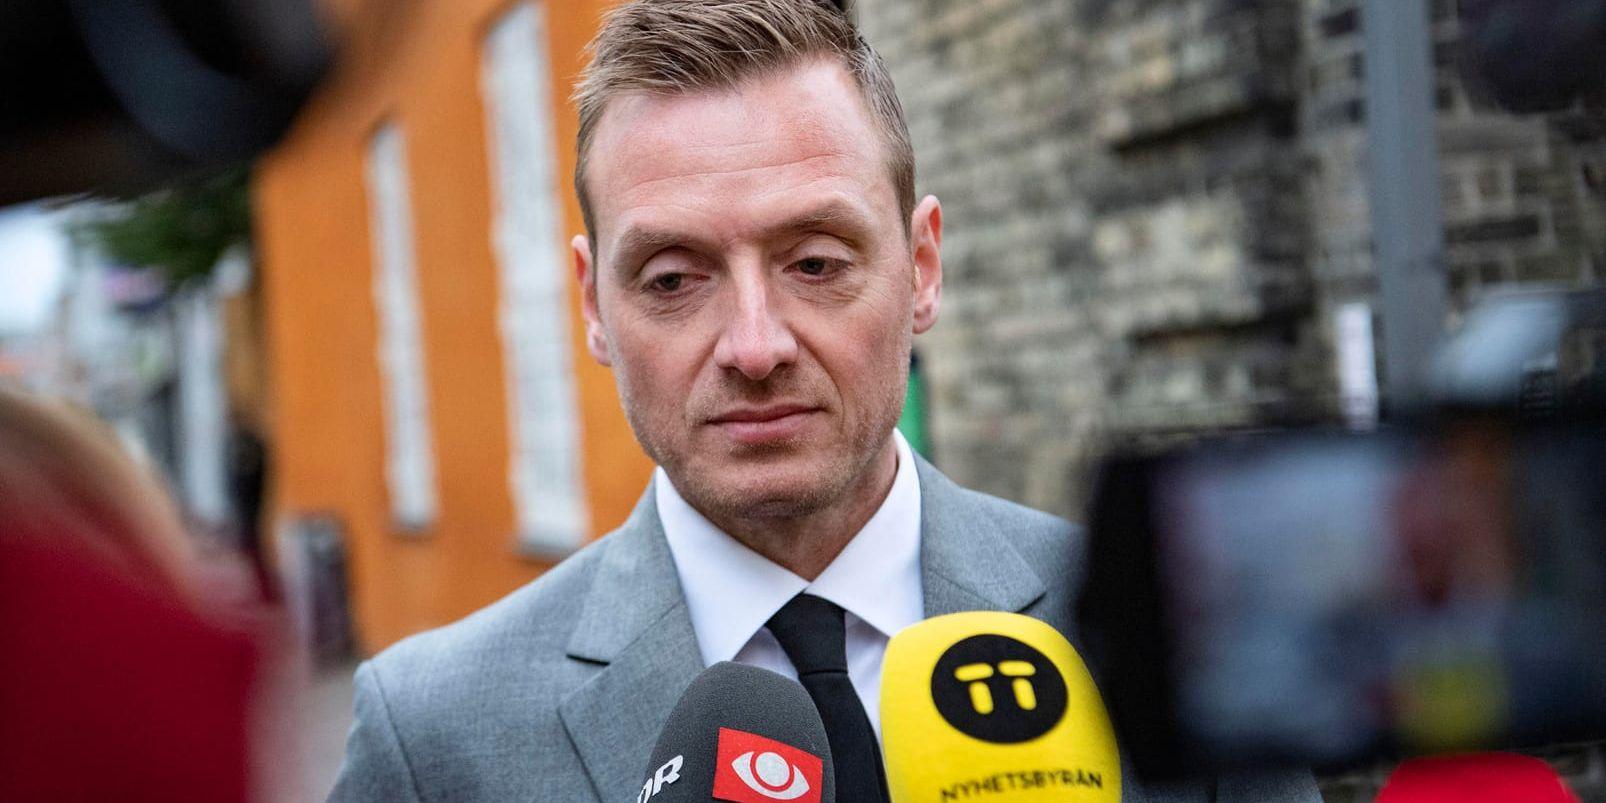 Åklagaren Kristian Kirk Petersen anländer till den danska hovrätten Østre landsret i Köpenhamn.